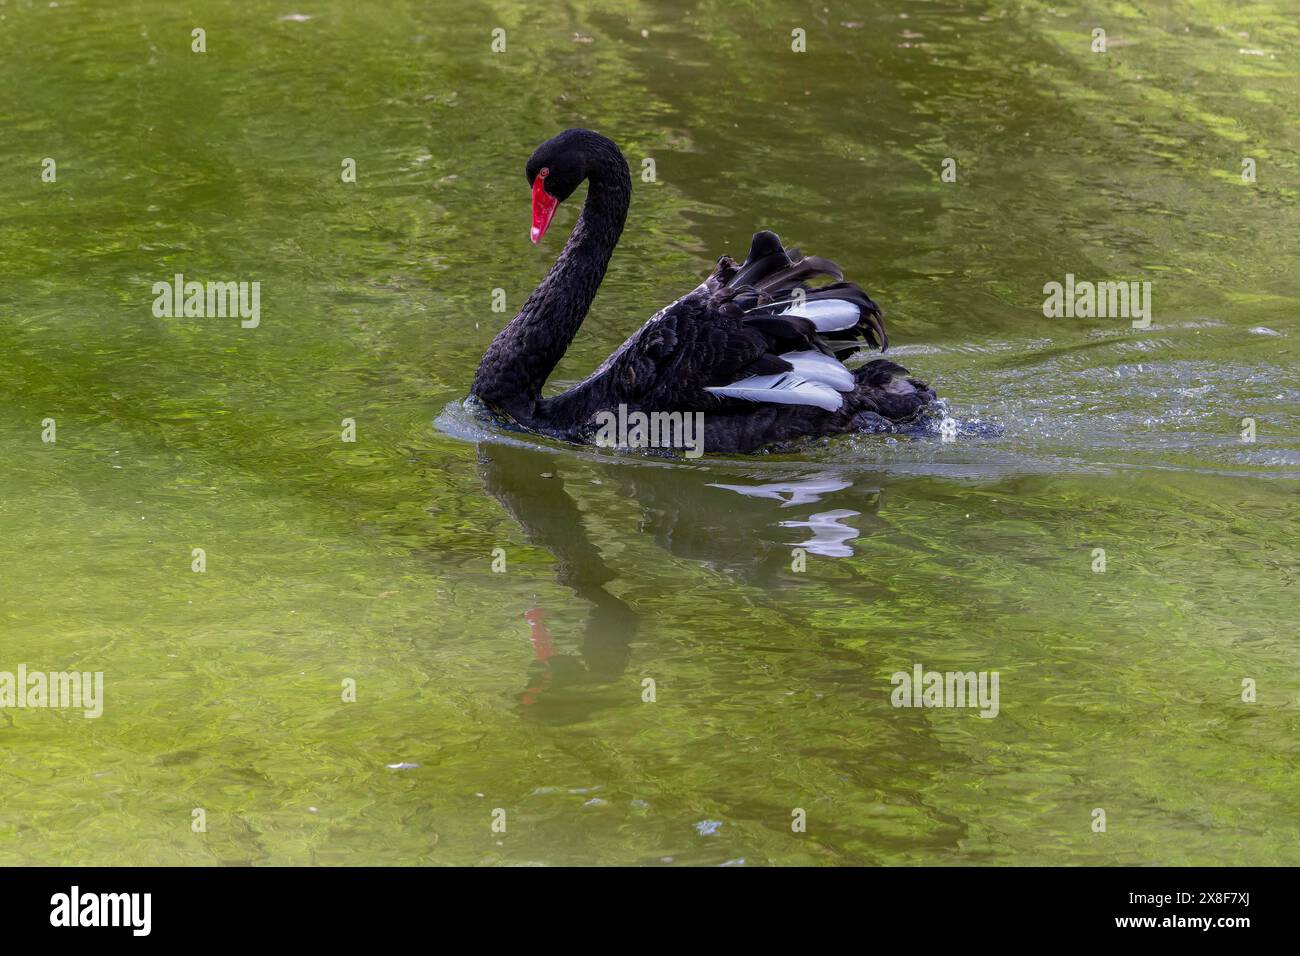 Cygne noir (Cygnus atratus), Cygne noir sur l'eau avec reflet vert, Parc animalier de Poing, haute-Bavière, Bavière, Allemagne Banque D'Images